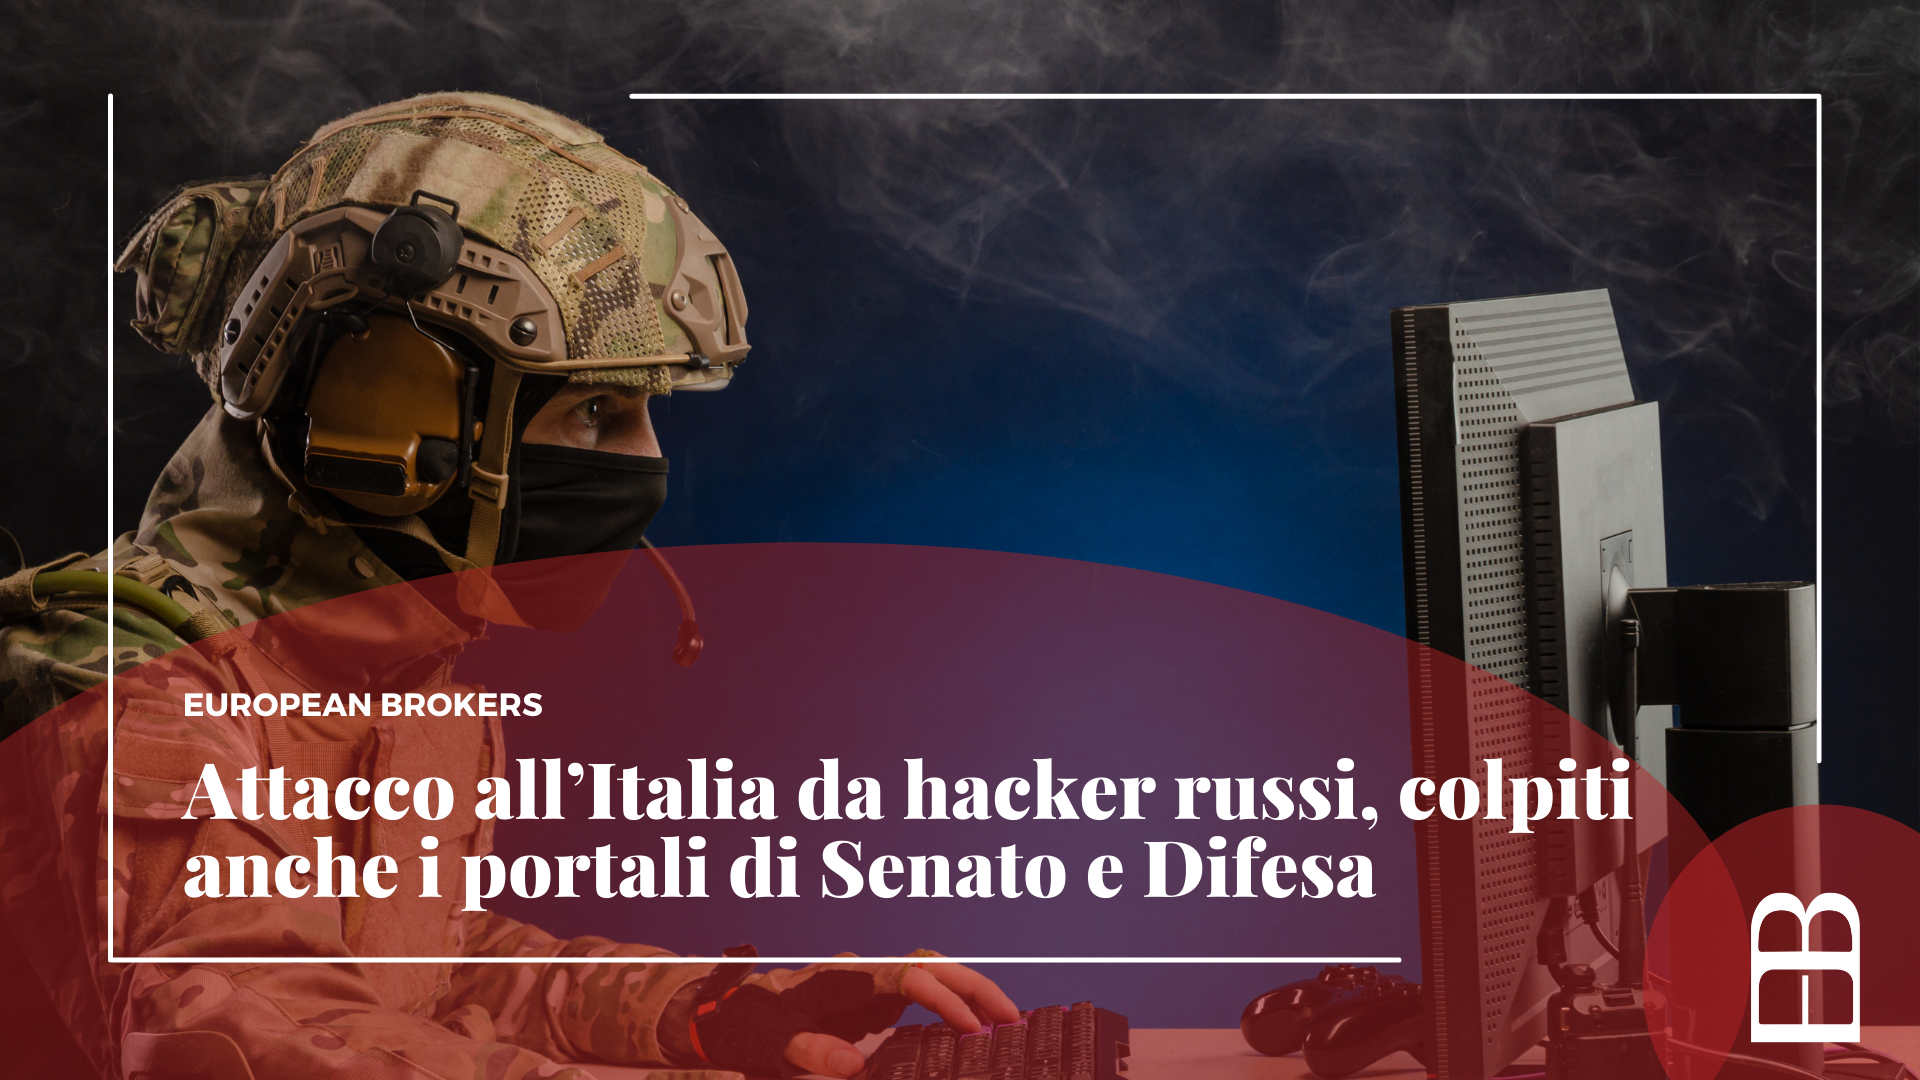 Attacco all’Italia da hacker russi, colpiti anche i portali di Senato e Difesa